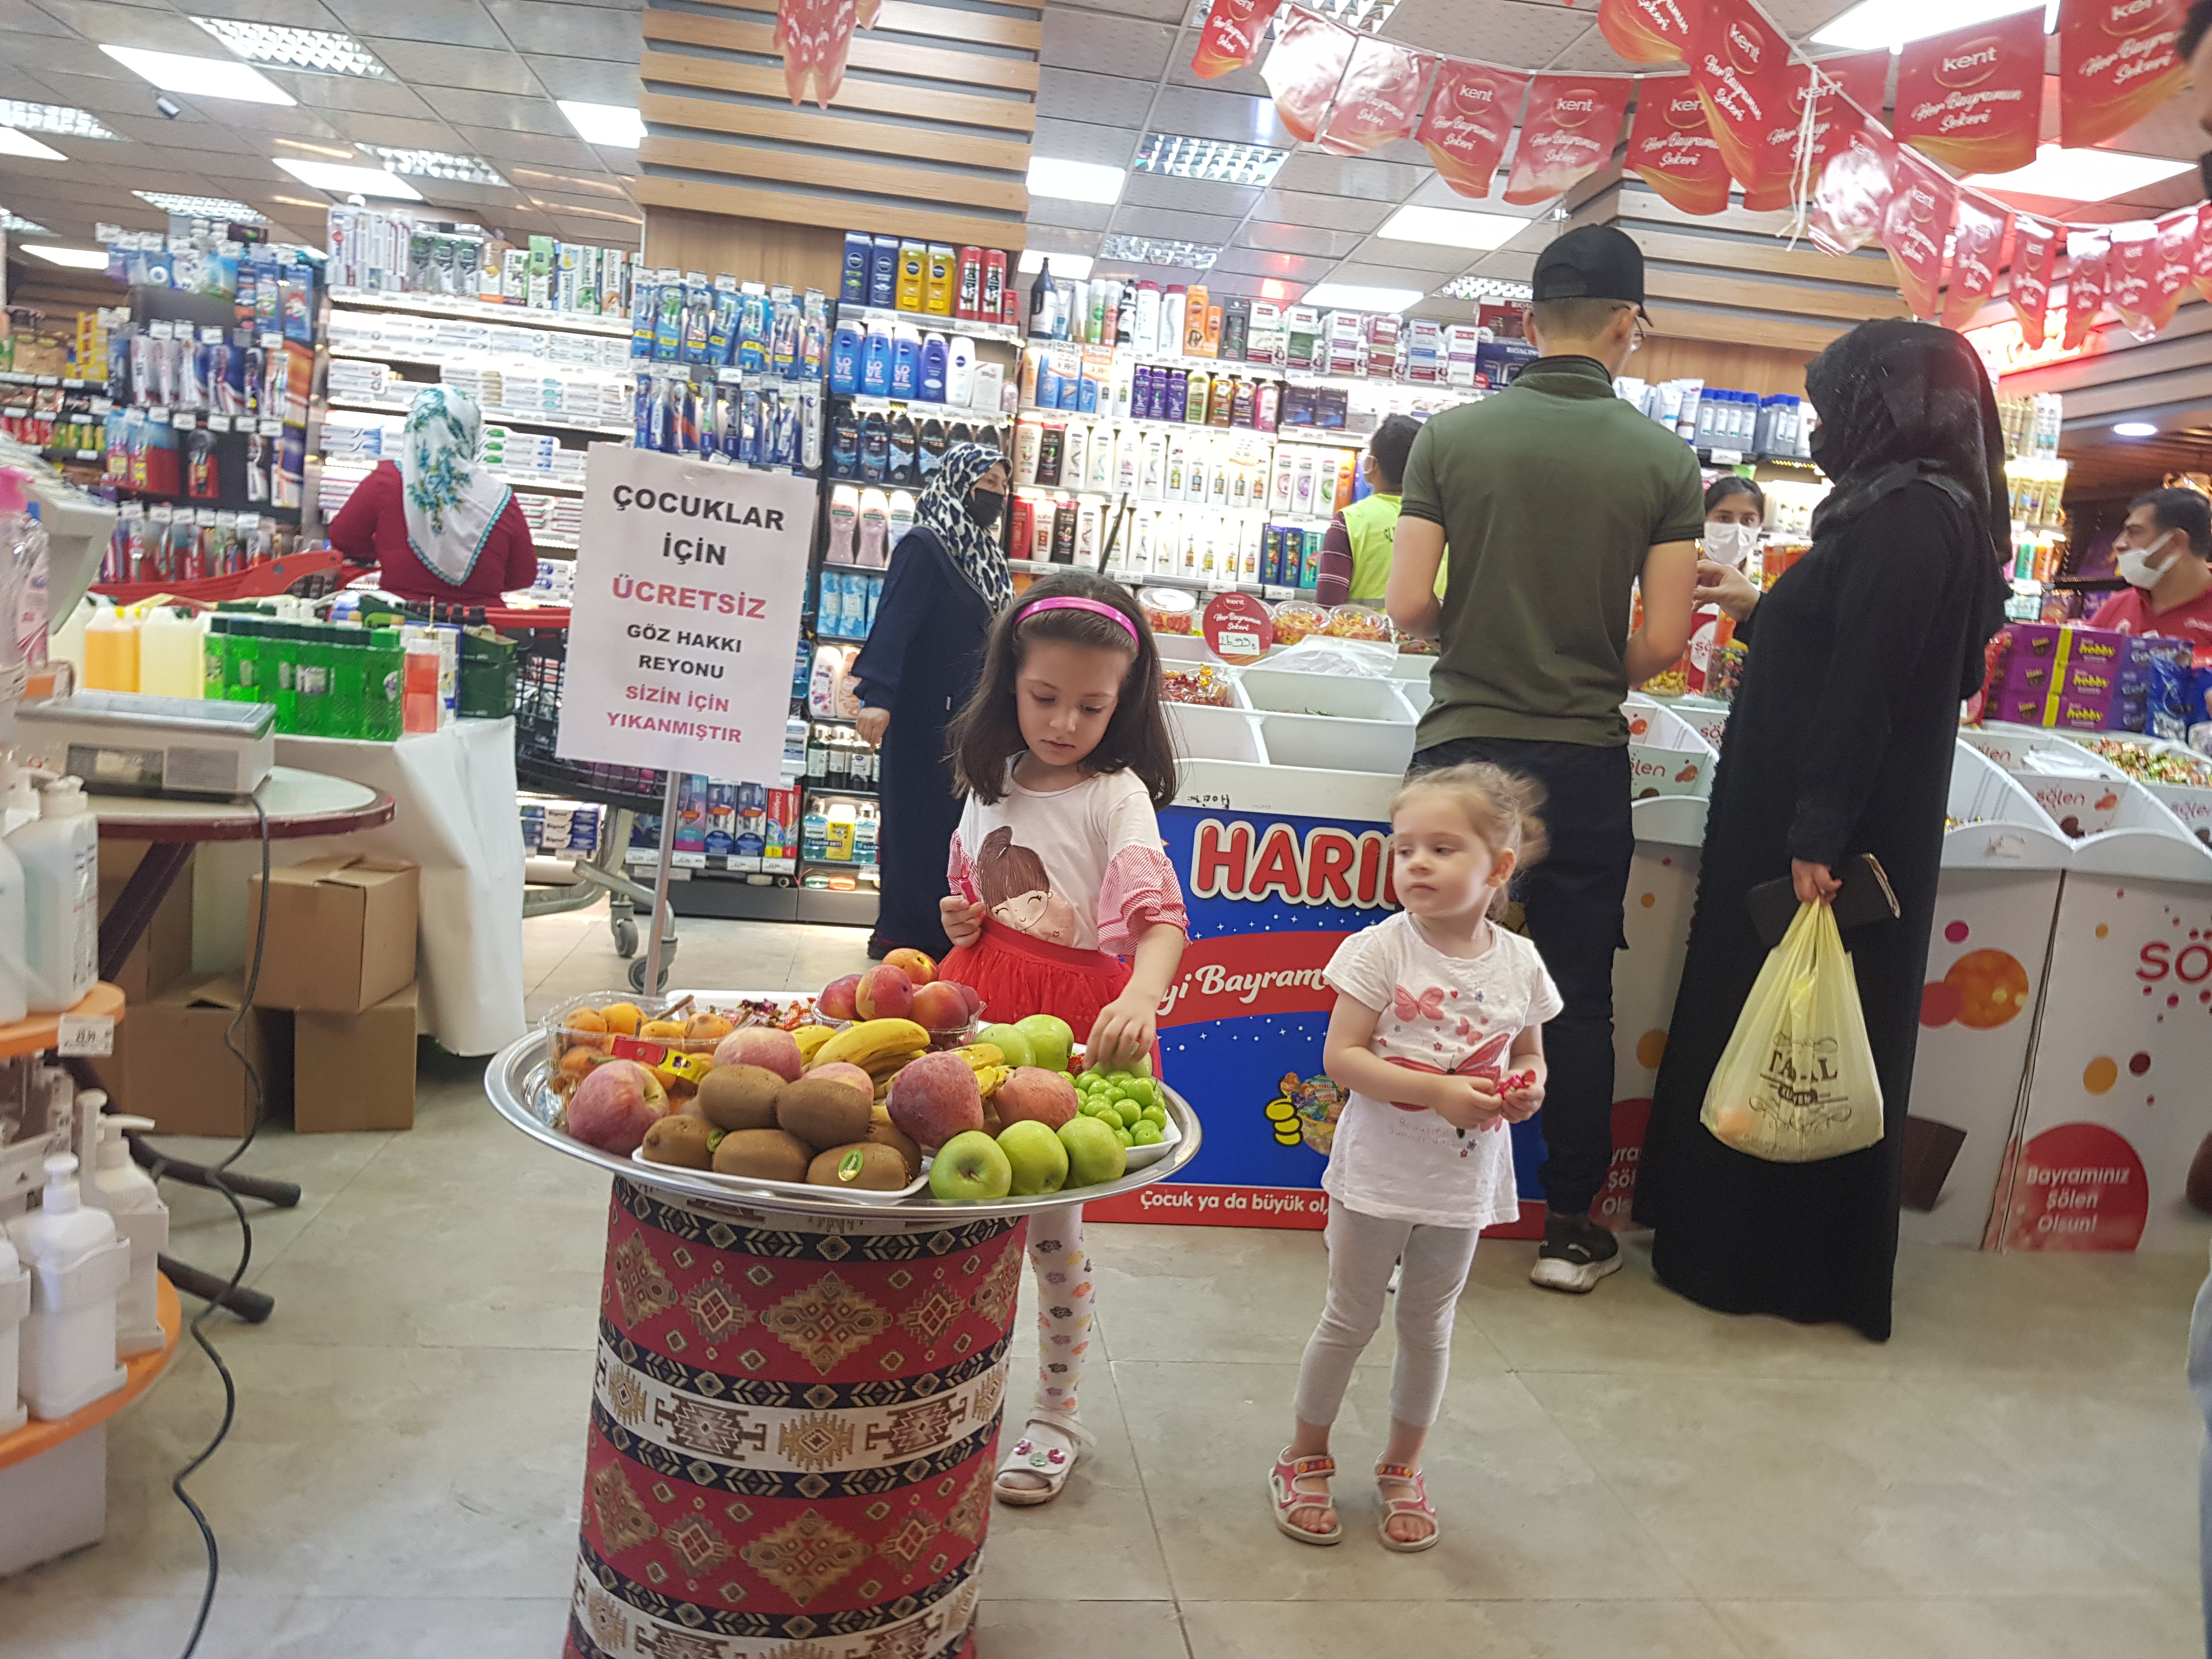 Gaziantep’te bir market çocuklar için "göz hakkı reyonu" hazırladı